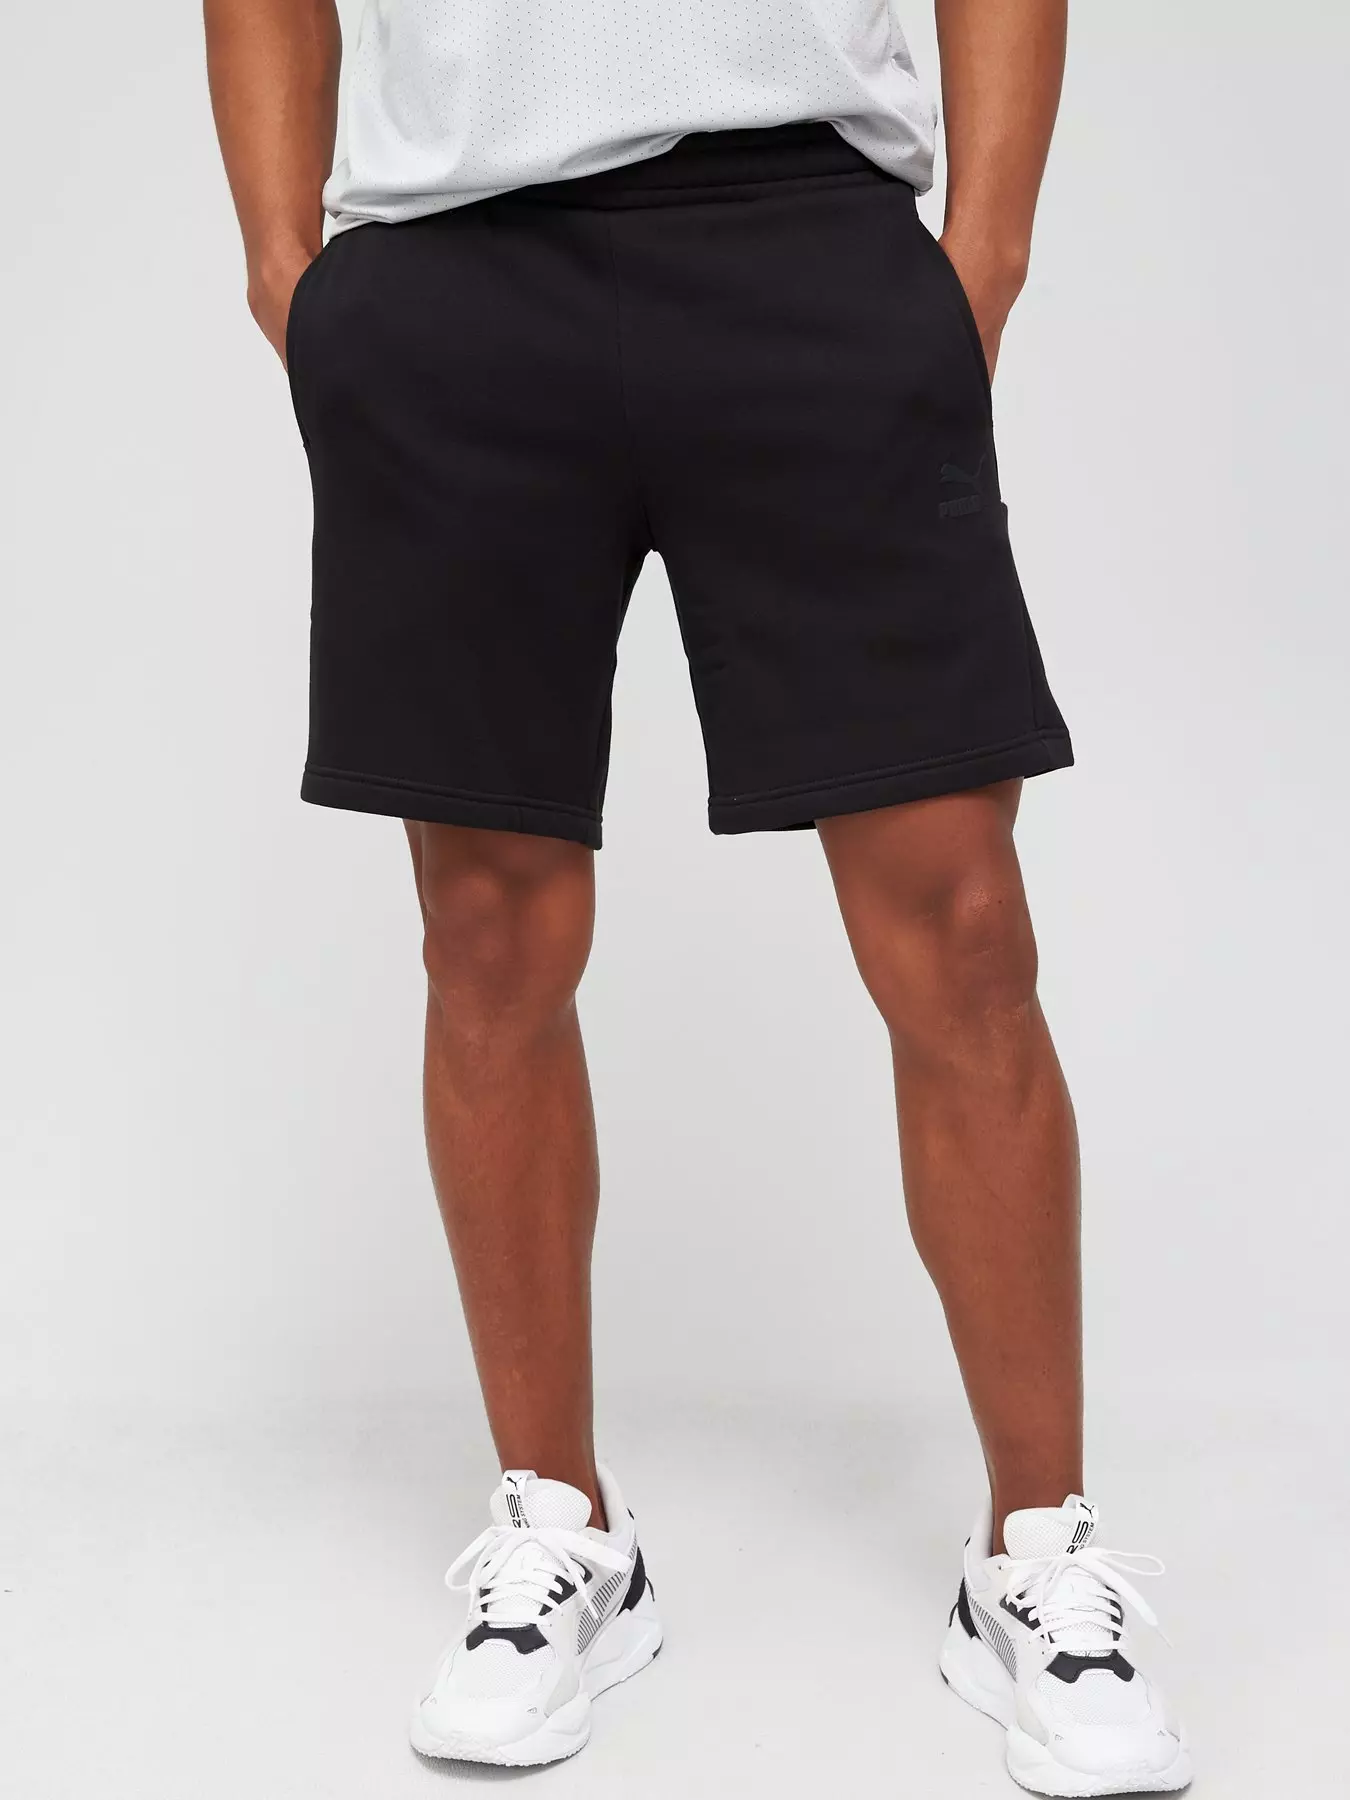 Tech Fleece Shorts in Black - Glue Store